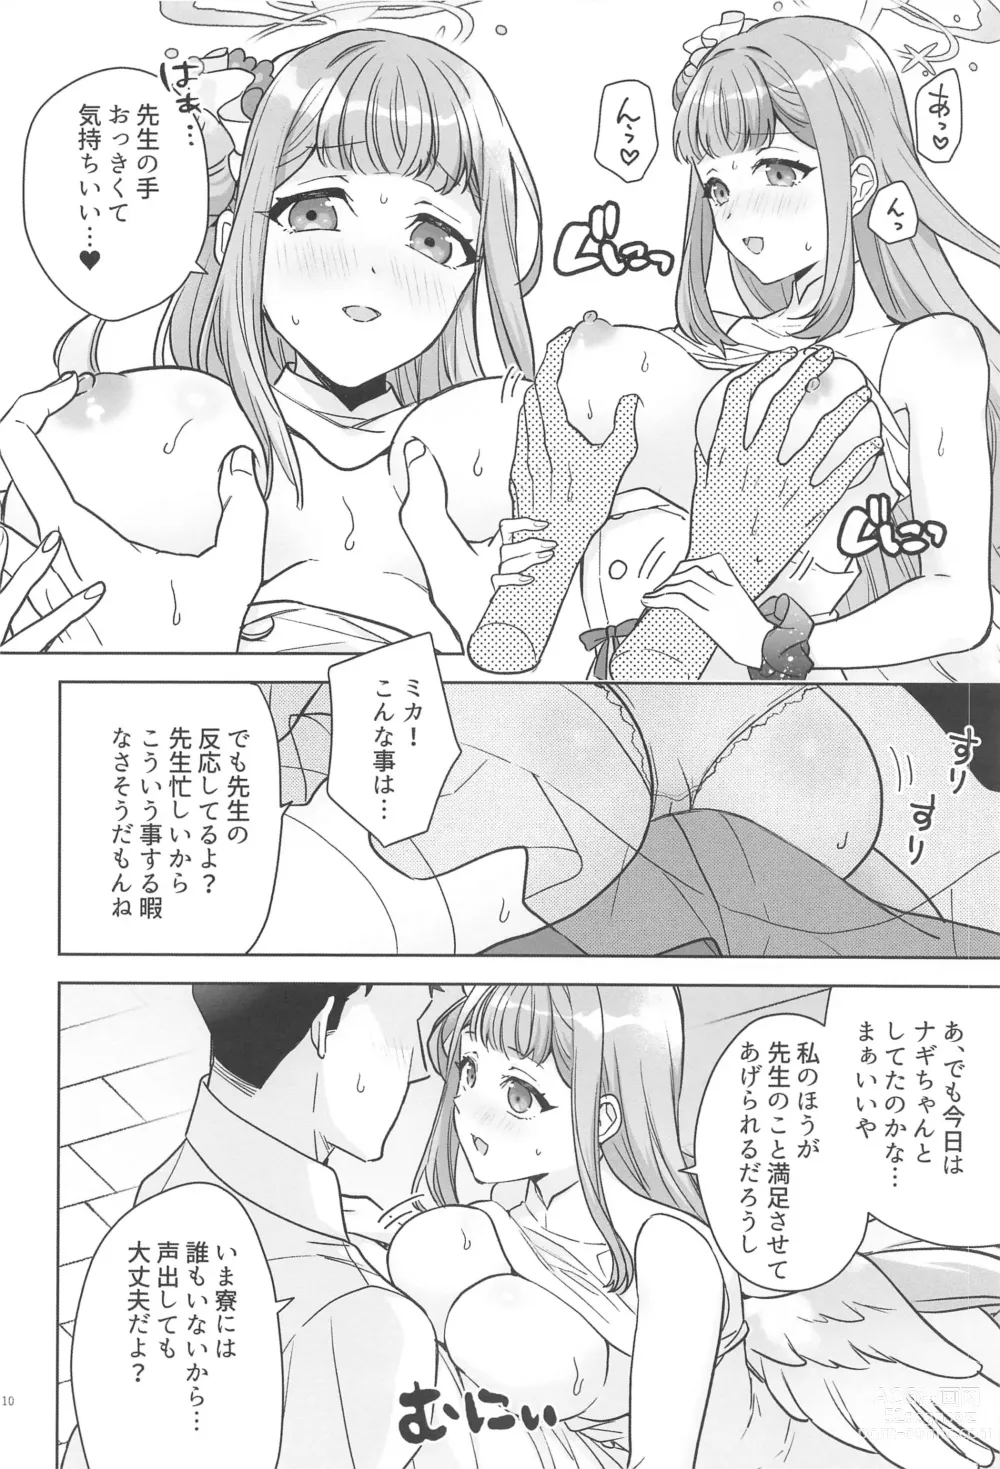 Page 9 of doujinshi Misino Mika  wa Dokusen Shitai